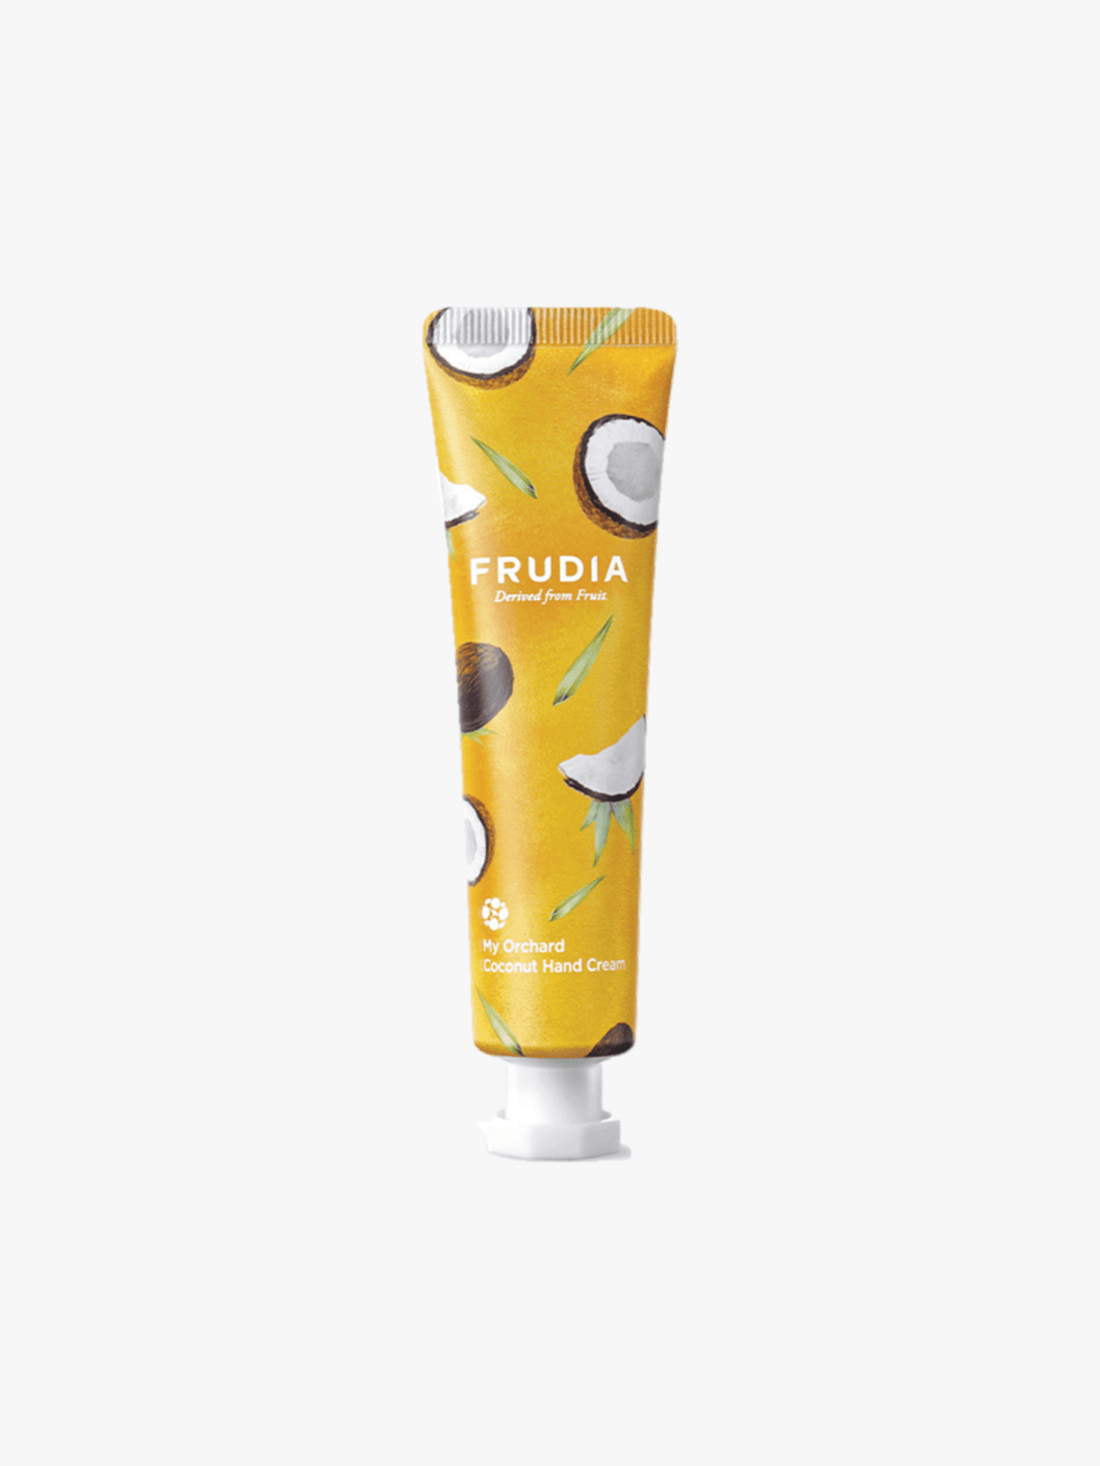 Frudia - Crème pour les mains - My Orchard Hand Cream Coconut